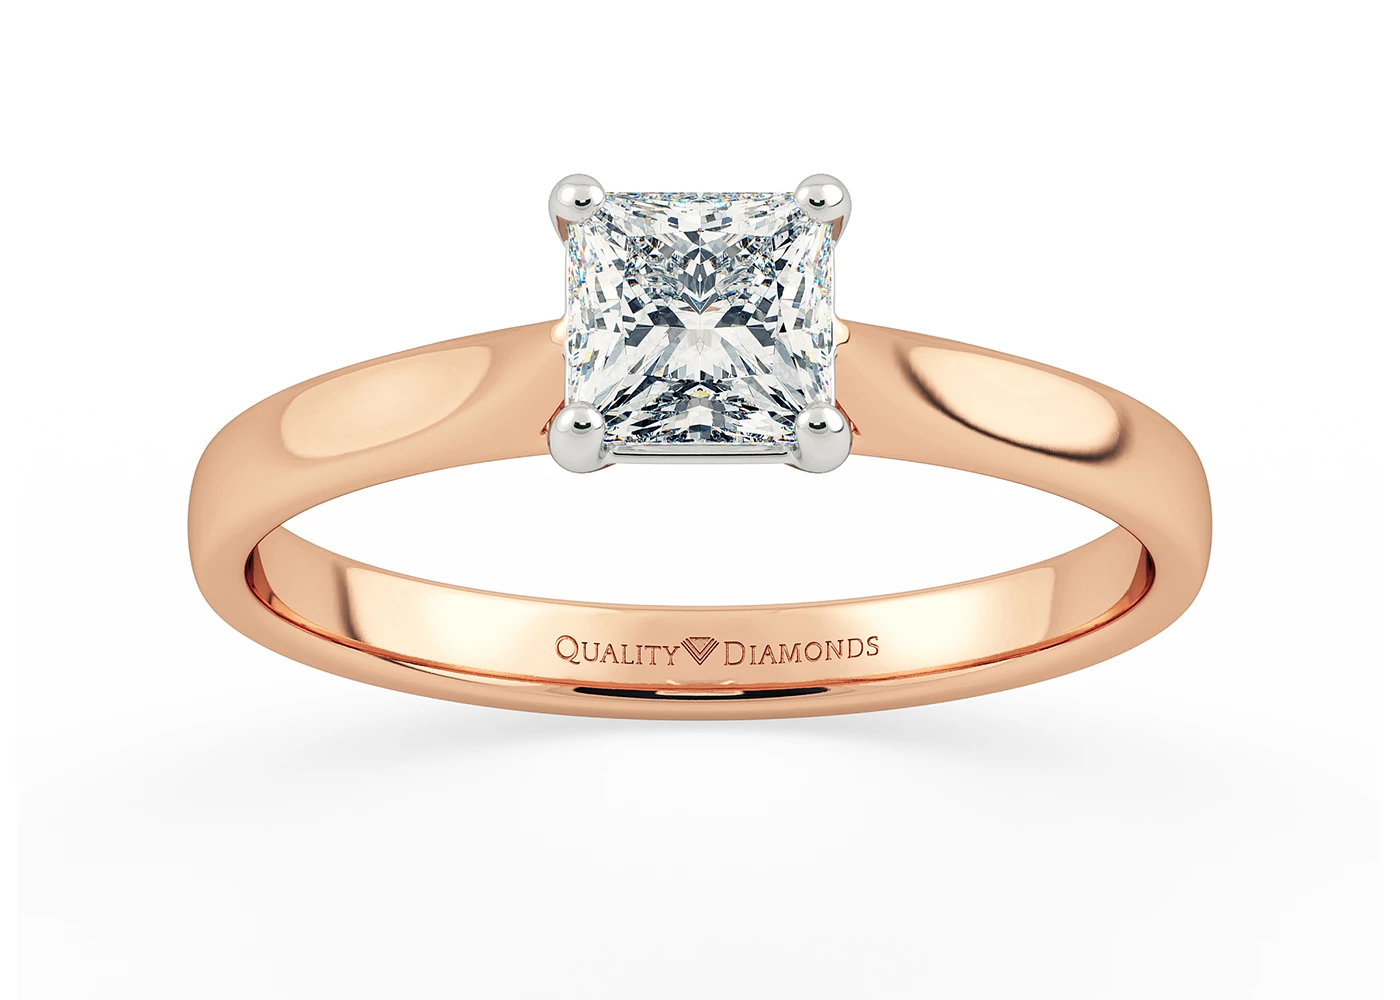 Princess Clara Diamond Ring in 9K Rose Gold